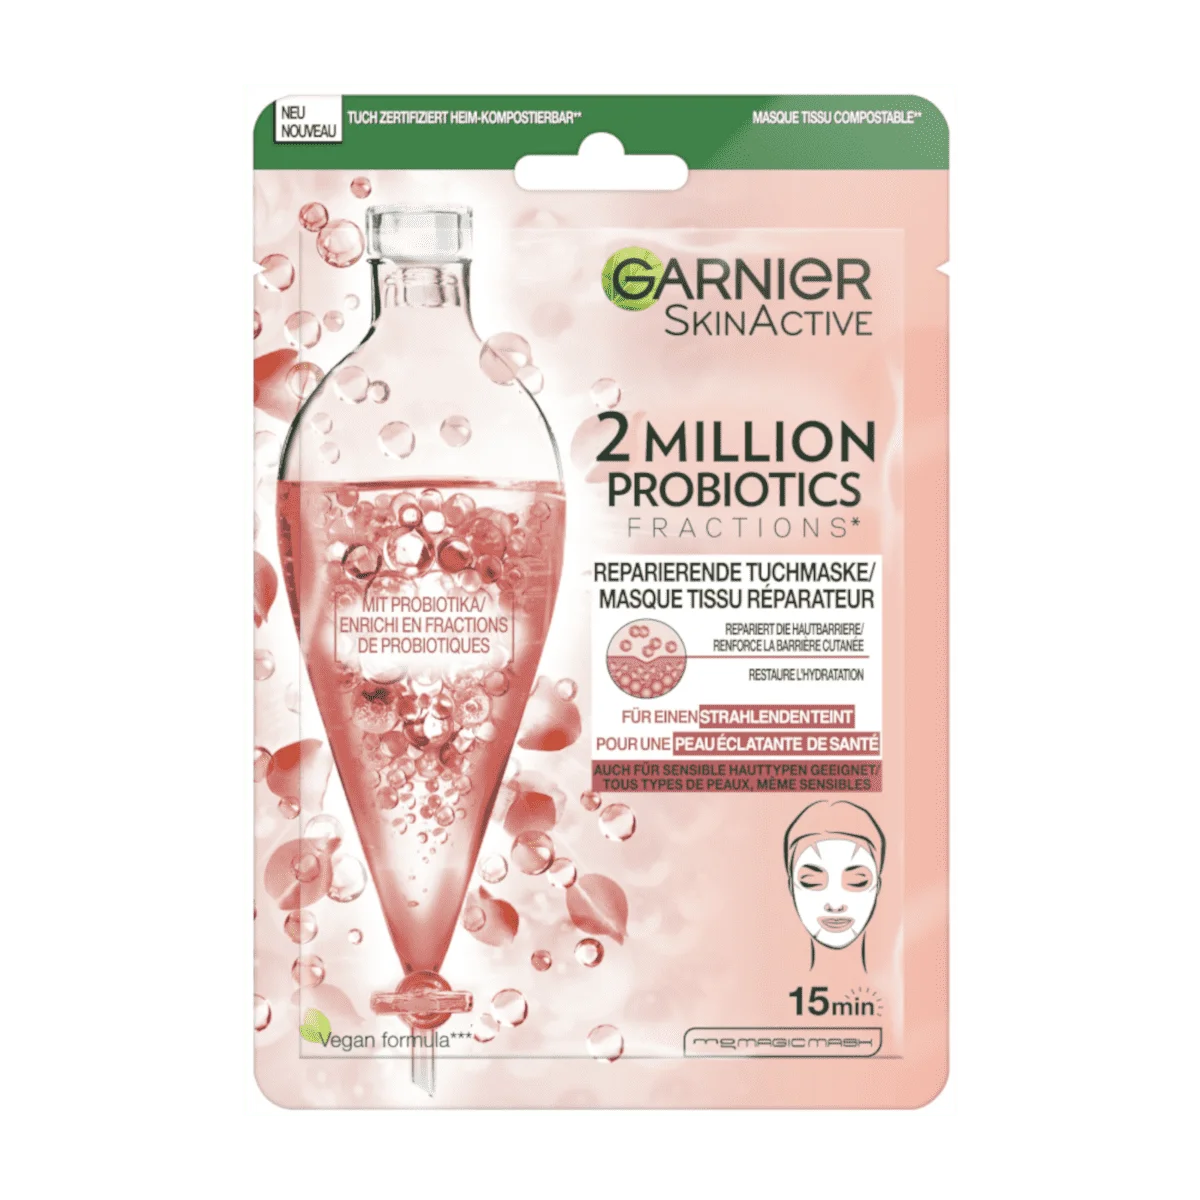 Garnier Skin Active Tuchmaske 2 Million Probiotics, 1 Stk